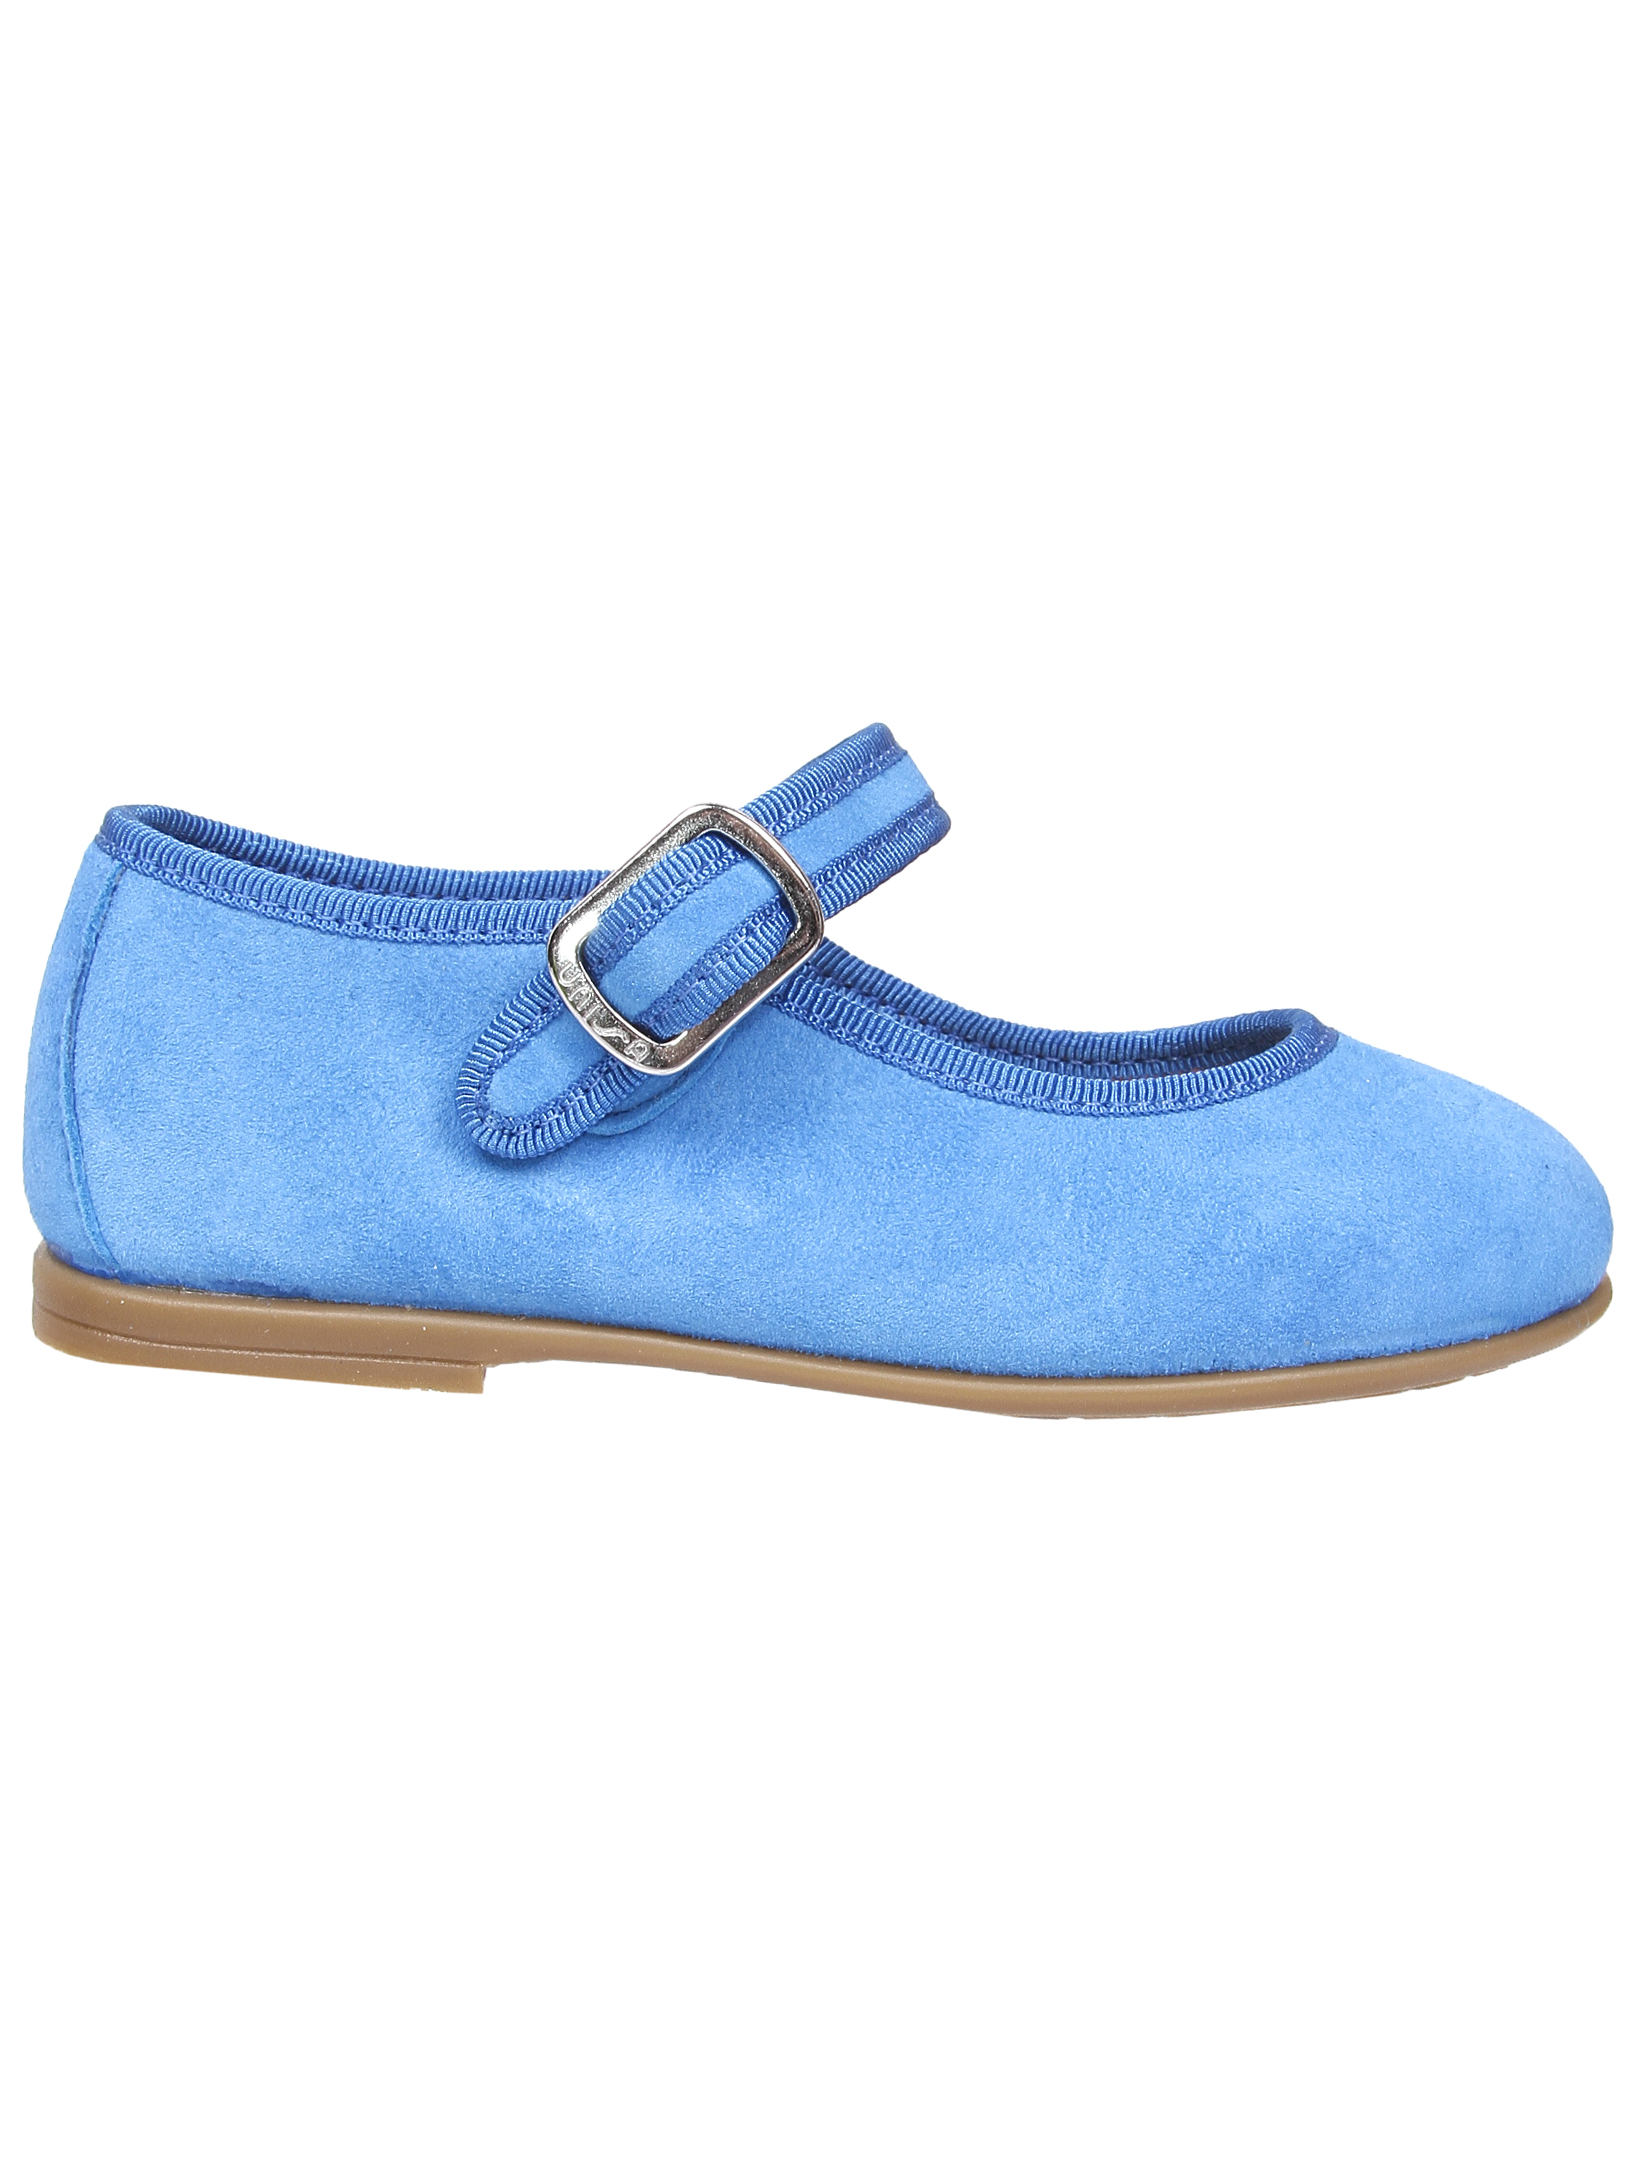 Туфли UNISA 1952860, цвет голубой, размер 33 2011509970013 - фото 3